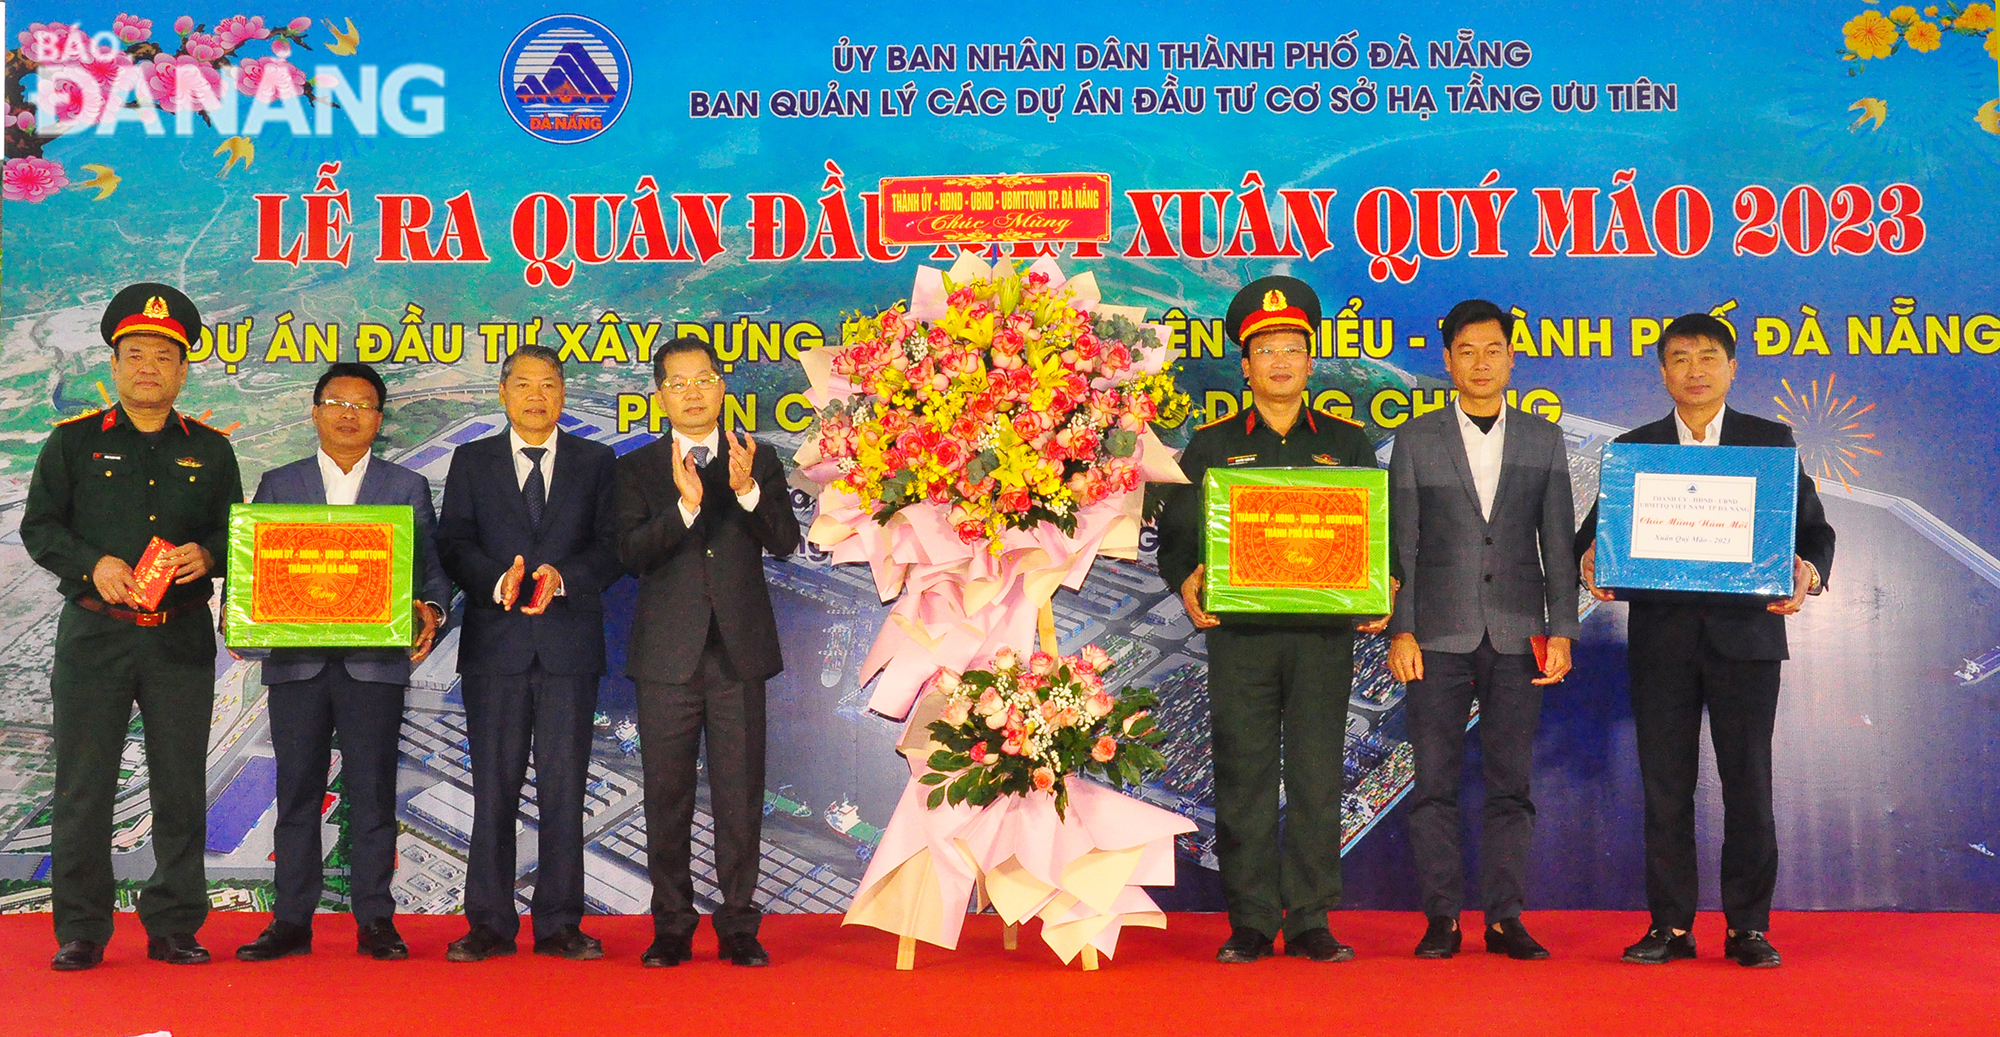 Bí thư Thành ủy Nguyễn Văn Quảng (thứ 4 từ trái sang) tặng quà cho đơn vị thi công, nhà thầu. Ảnh: 